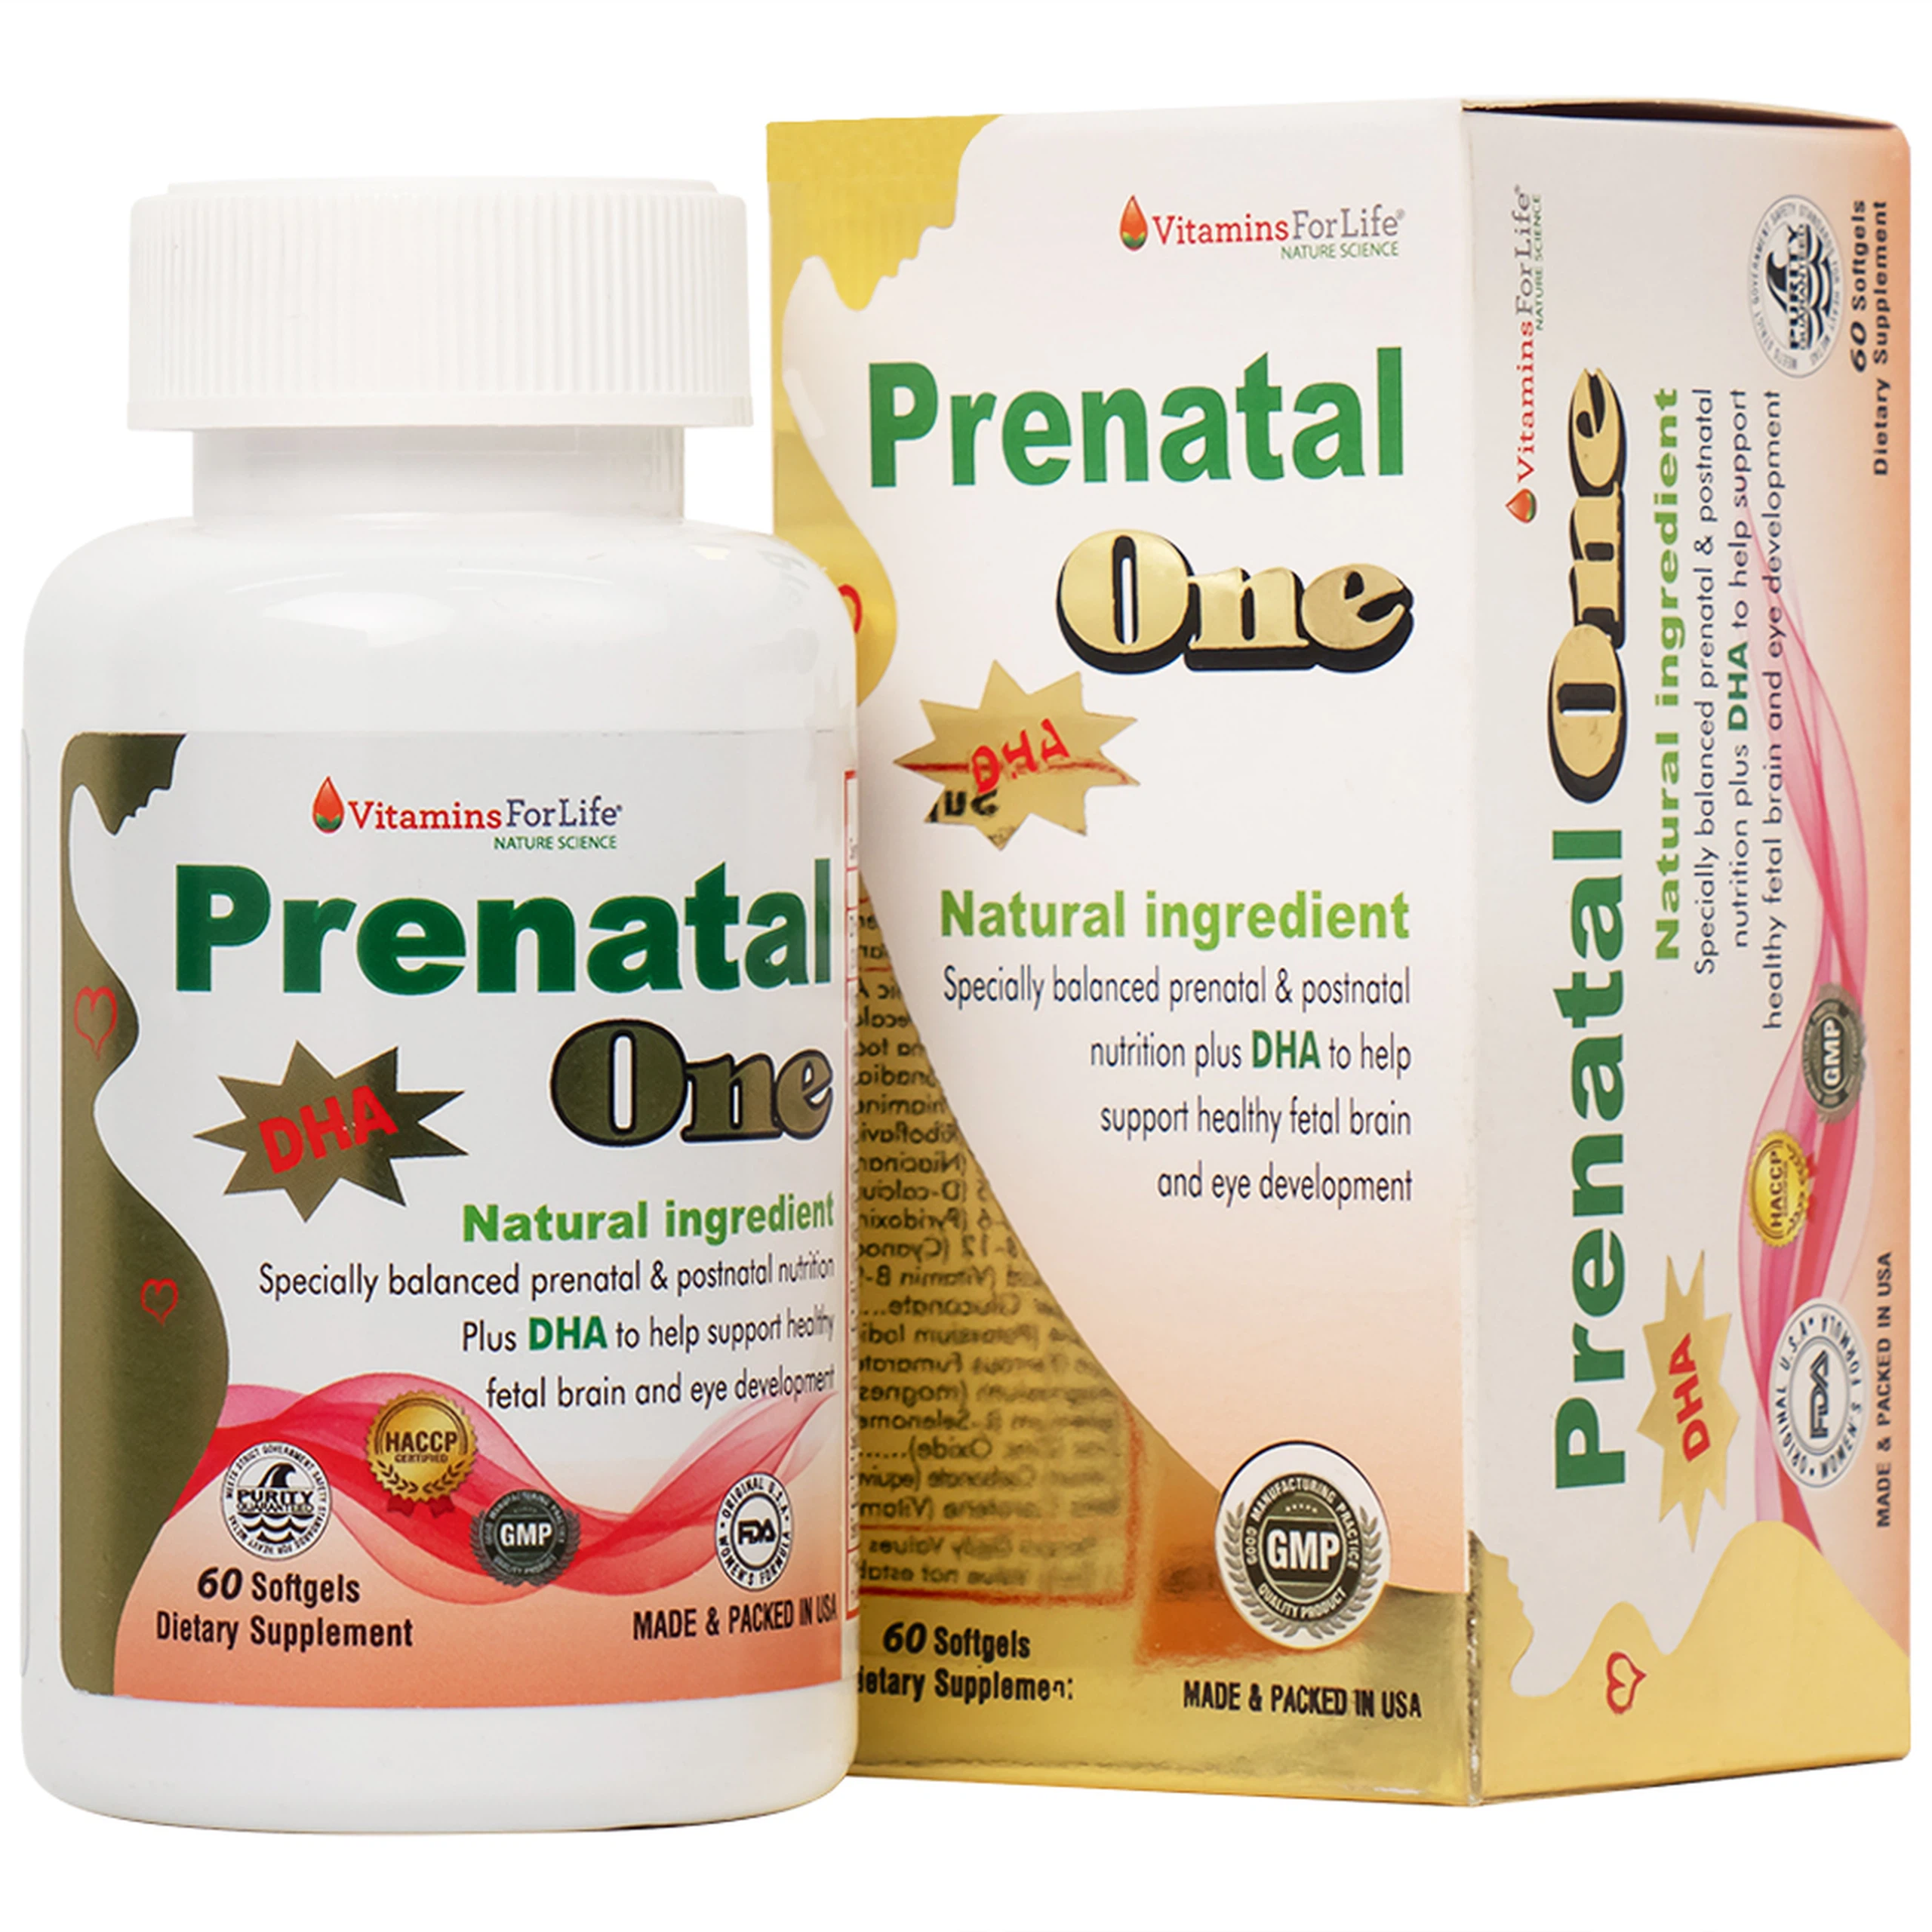 Thực phẩm bảo vệ sức khỏe Prenatal One Vitamins For Life cung cấp DHA, vitamin và khoáng chất 